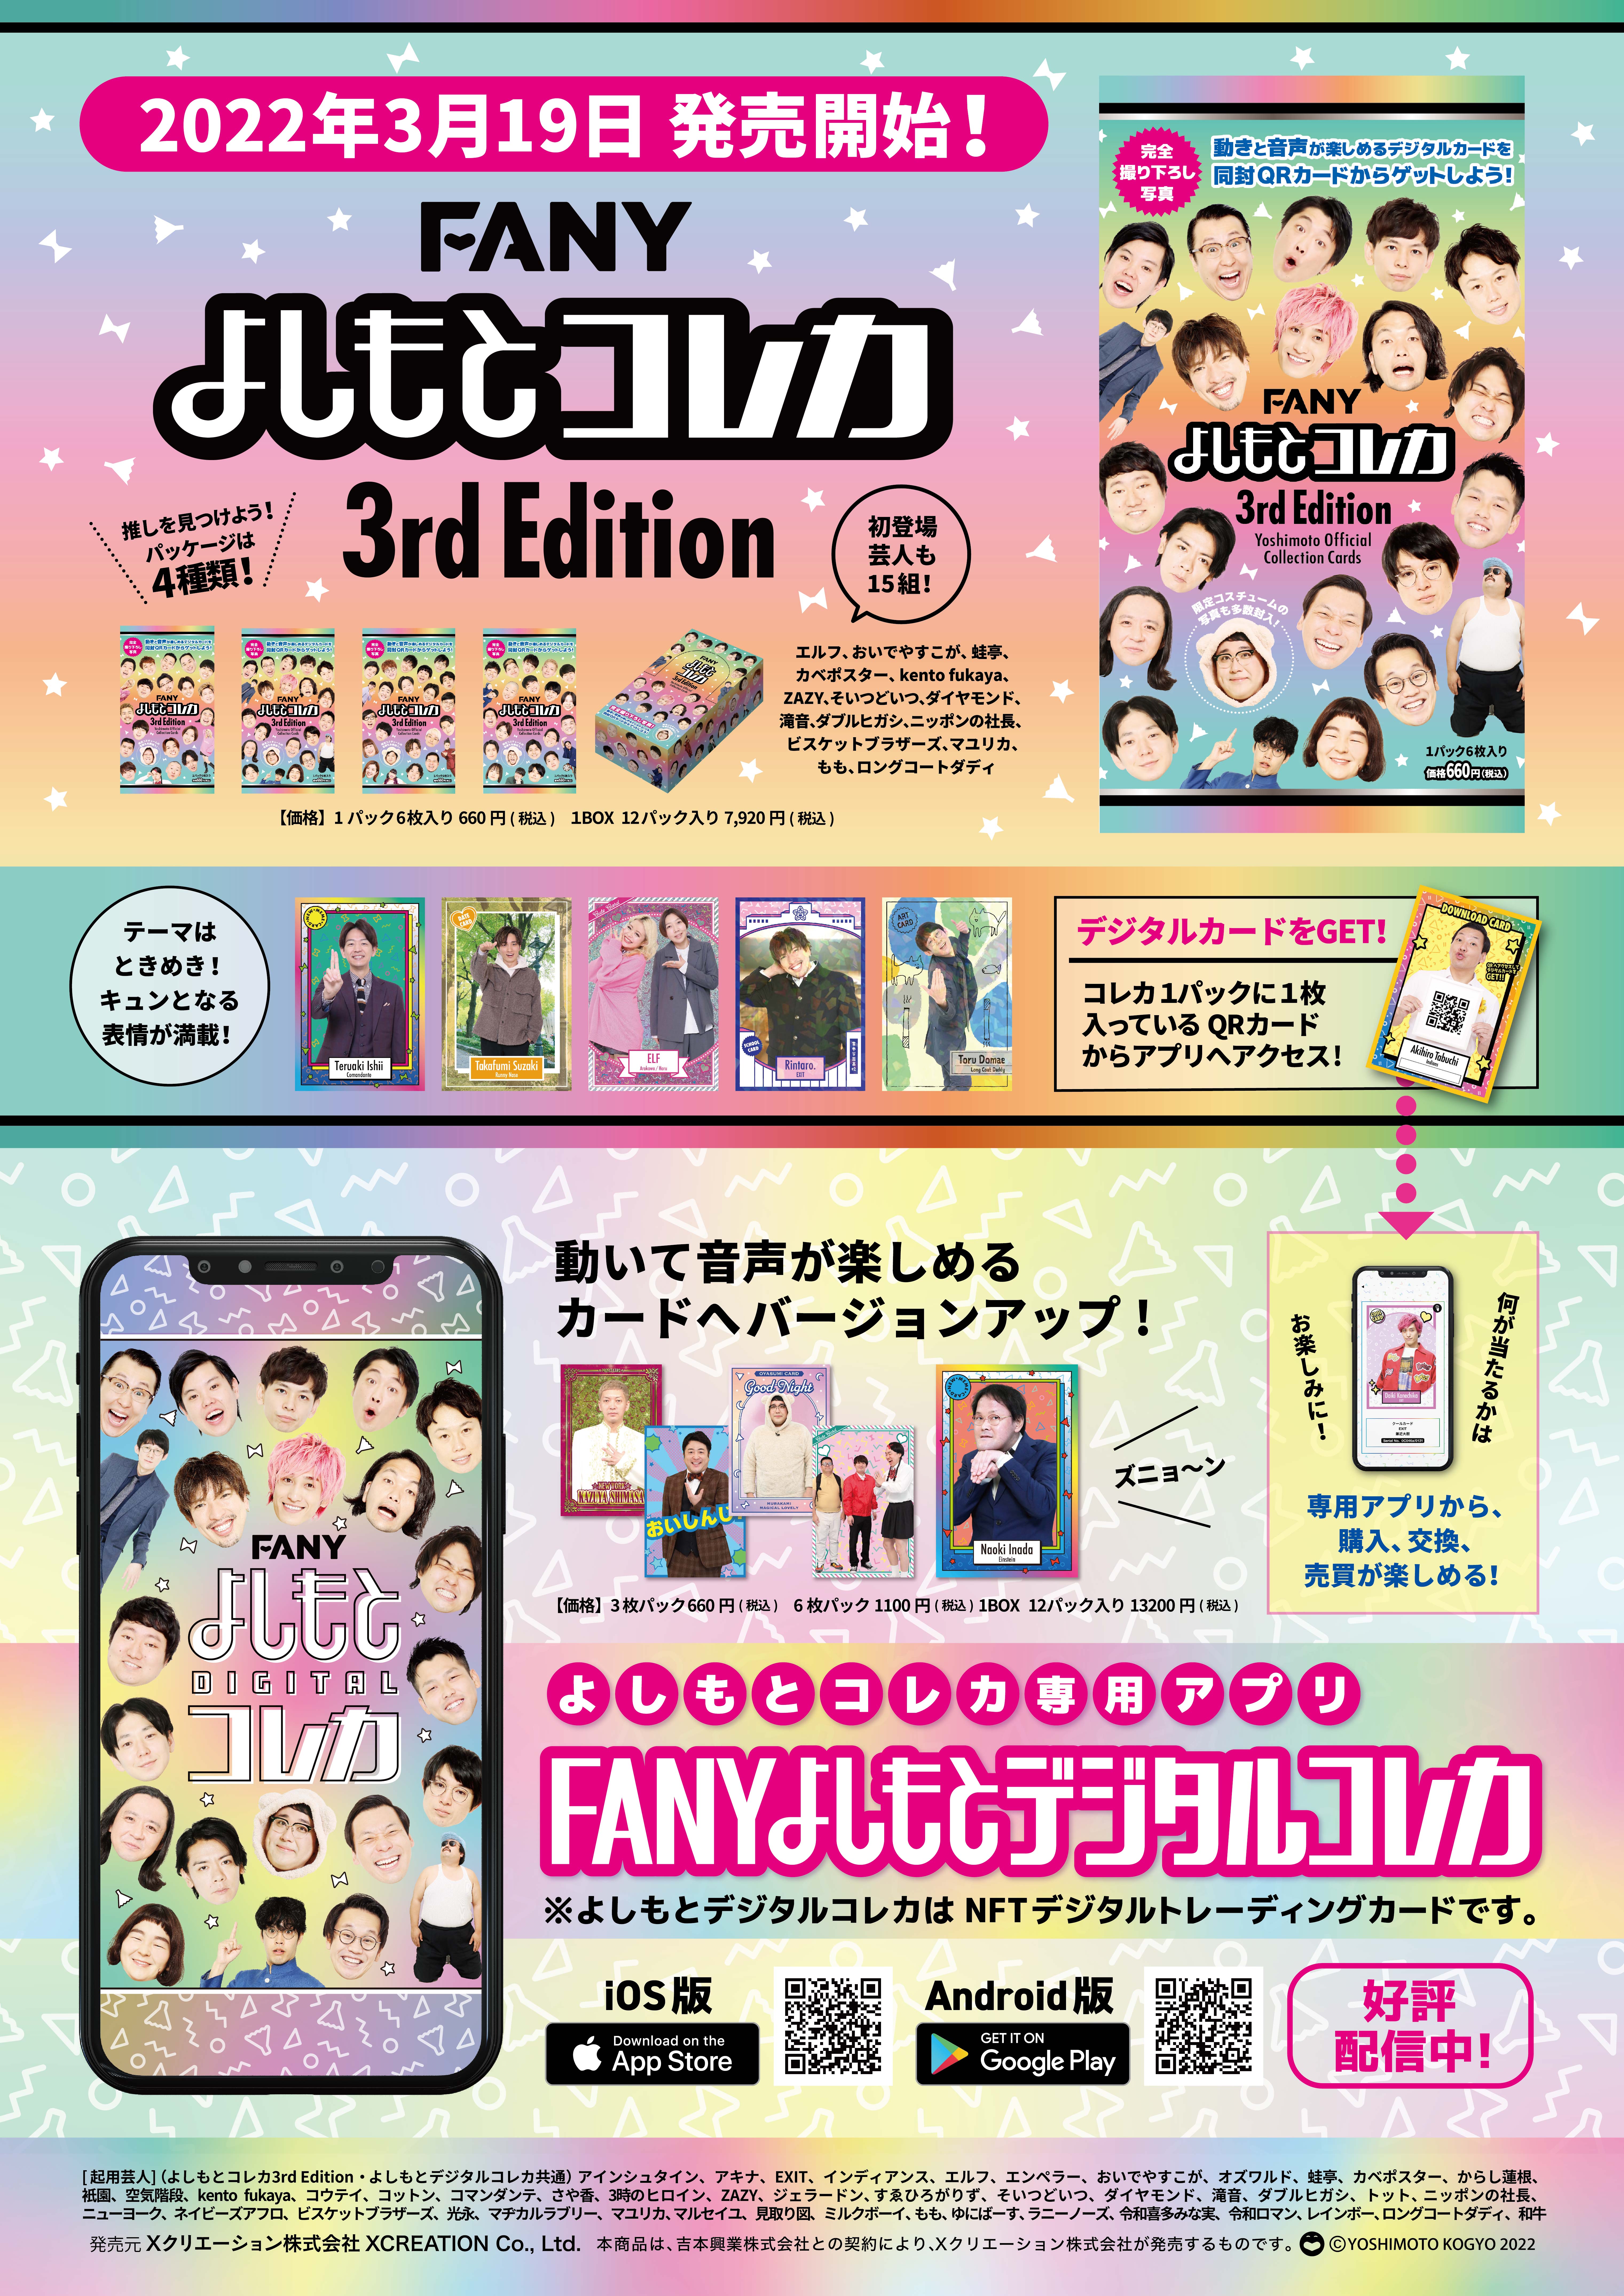 大ヒット御礼!「FANYよしもとコレカ3rd Edition」5月7日より東京